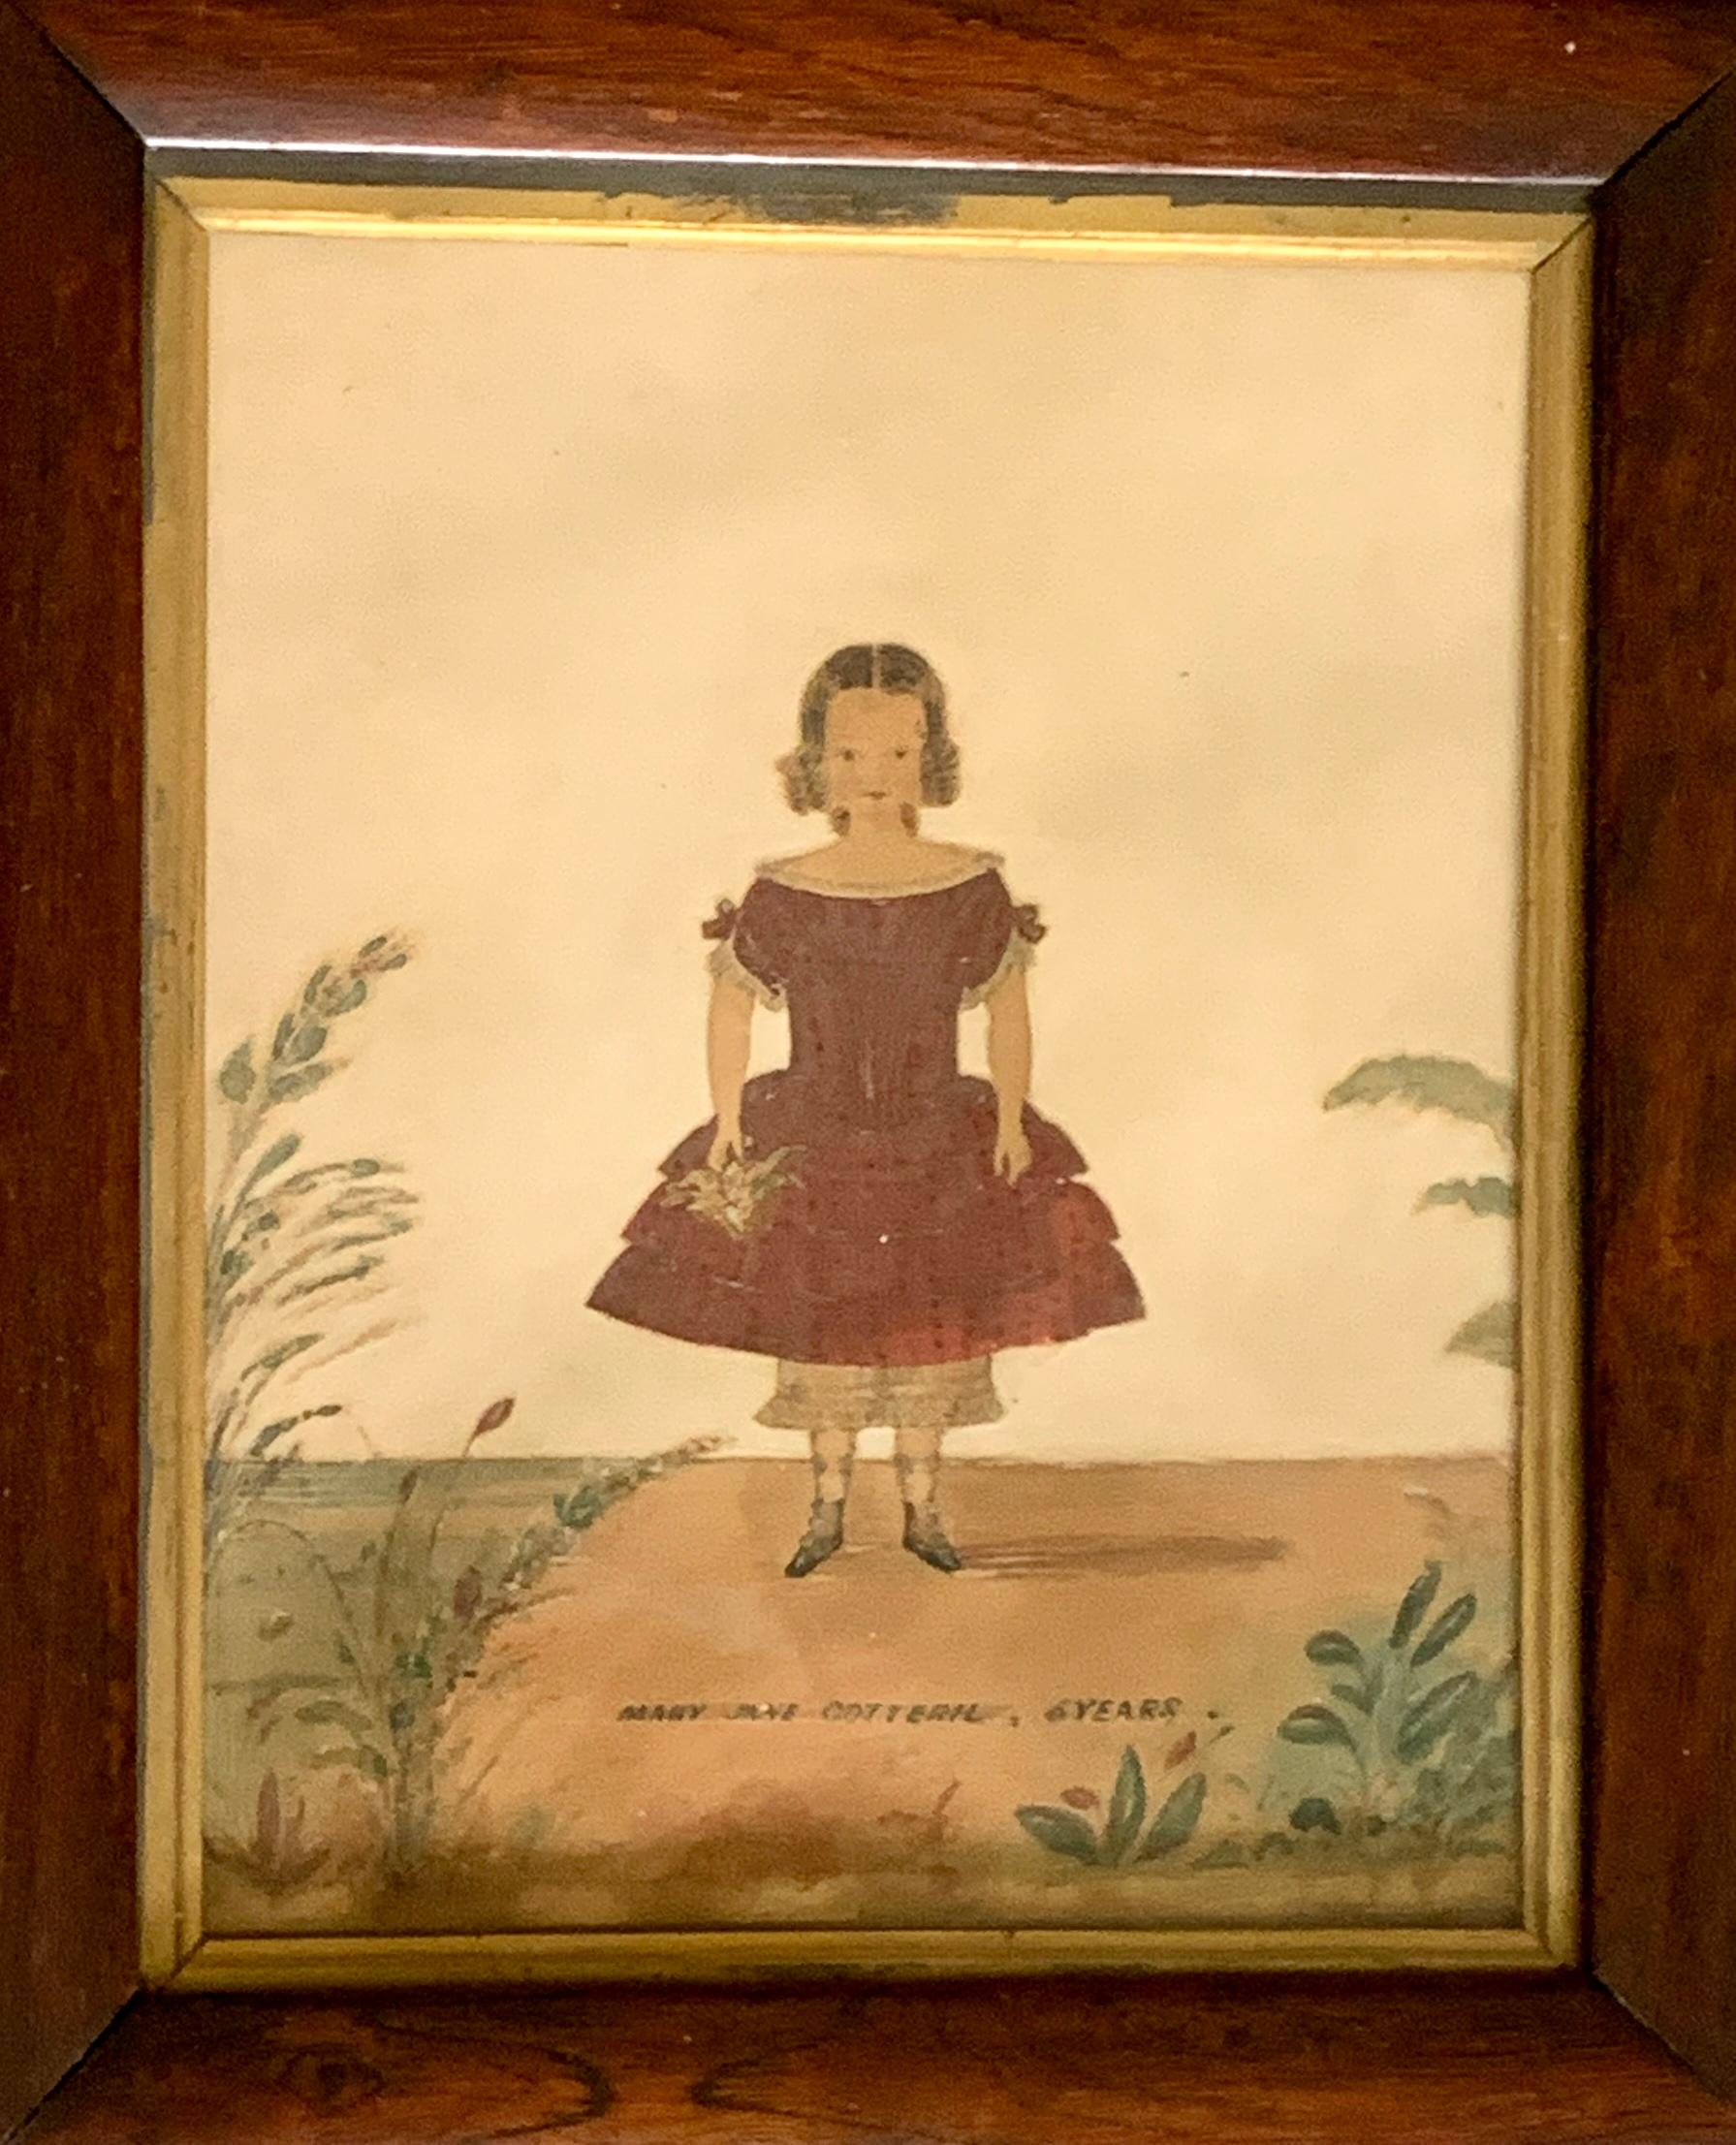 Dieses schöne Porträt der jungen Mary Jane Cotteril wurde um 1840 in England angefertigt. Ihre Pose ist geradlinig, und ihr zu eleganten Locken gestyltes Haar umrahmt ihr jugendliches Gesicht und verleiht ihm einen Hauch von Unschuld und Charme.